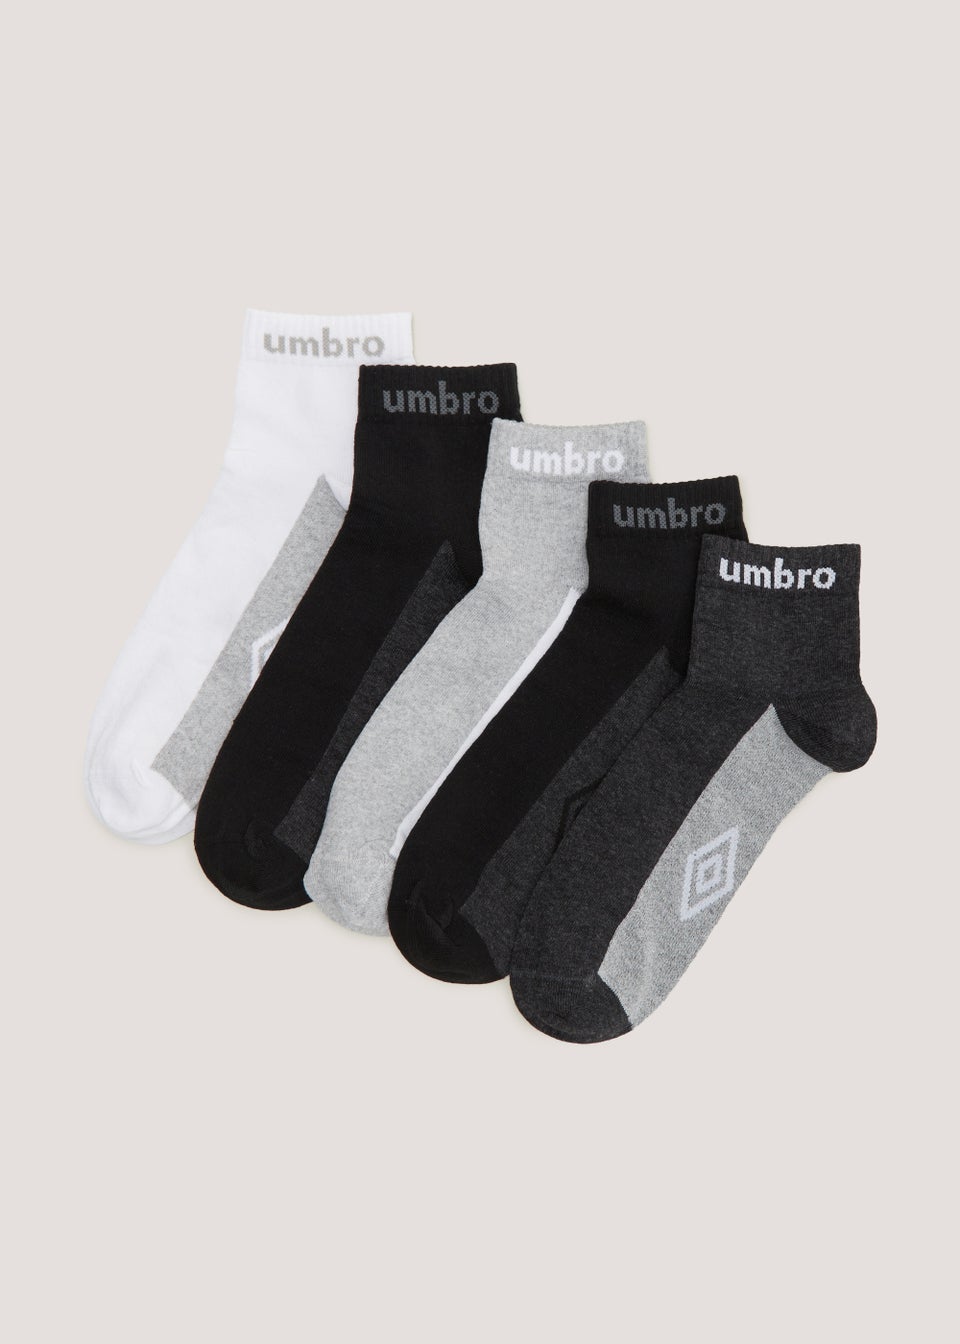 Umbro 5 Pack Multicoloured Quarter Socks